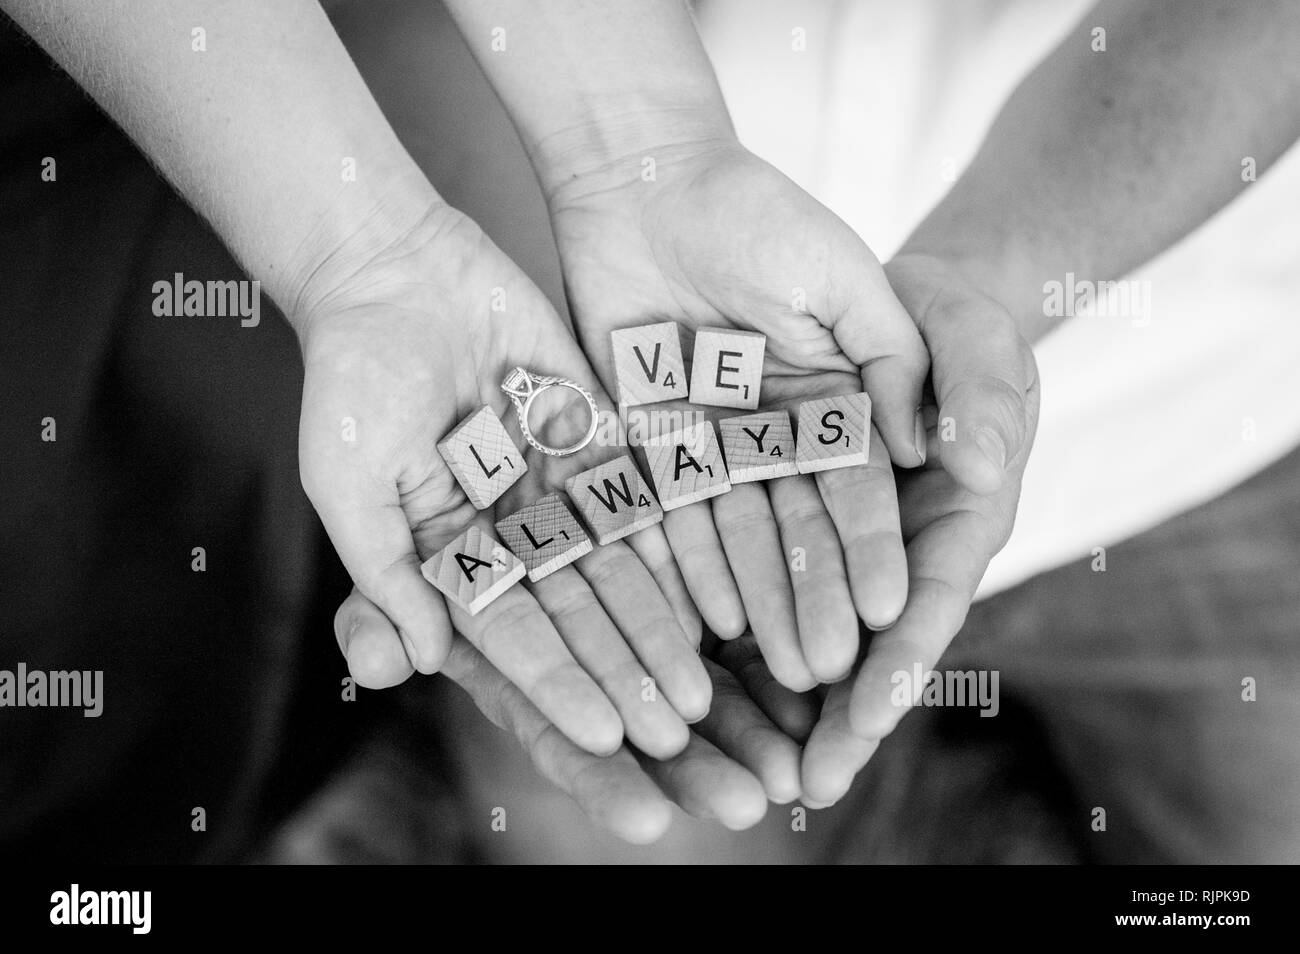 Horizontale Nahaufnahmen der Hände des Verlobten hohle um jeder des anderen, Holding scrabble Stücke Rechtschreibung die Worte "Liebe immer "mit dem Ring. Stockfoto